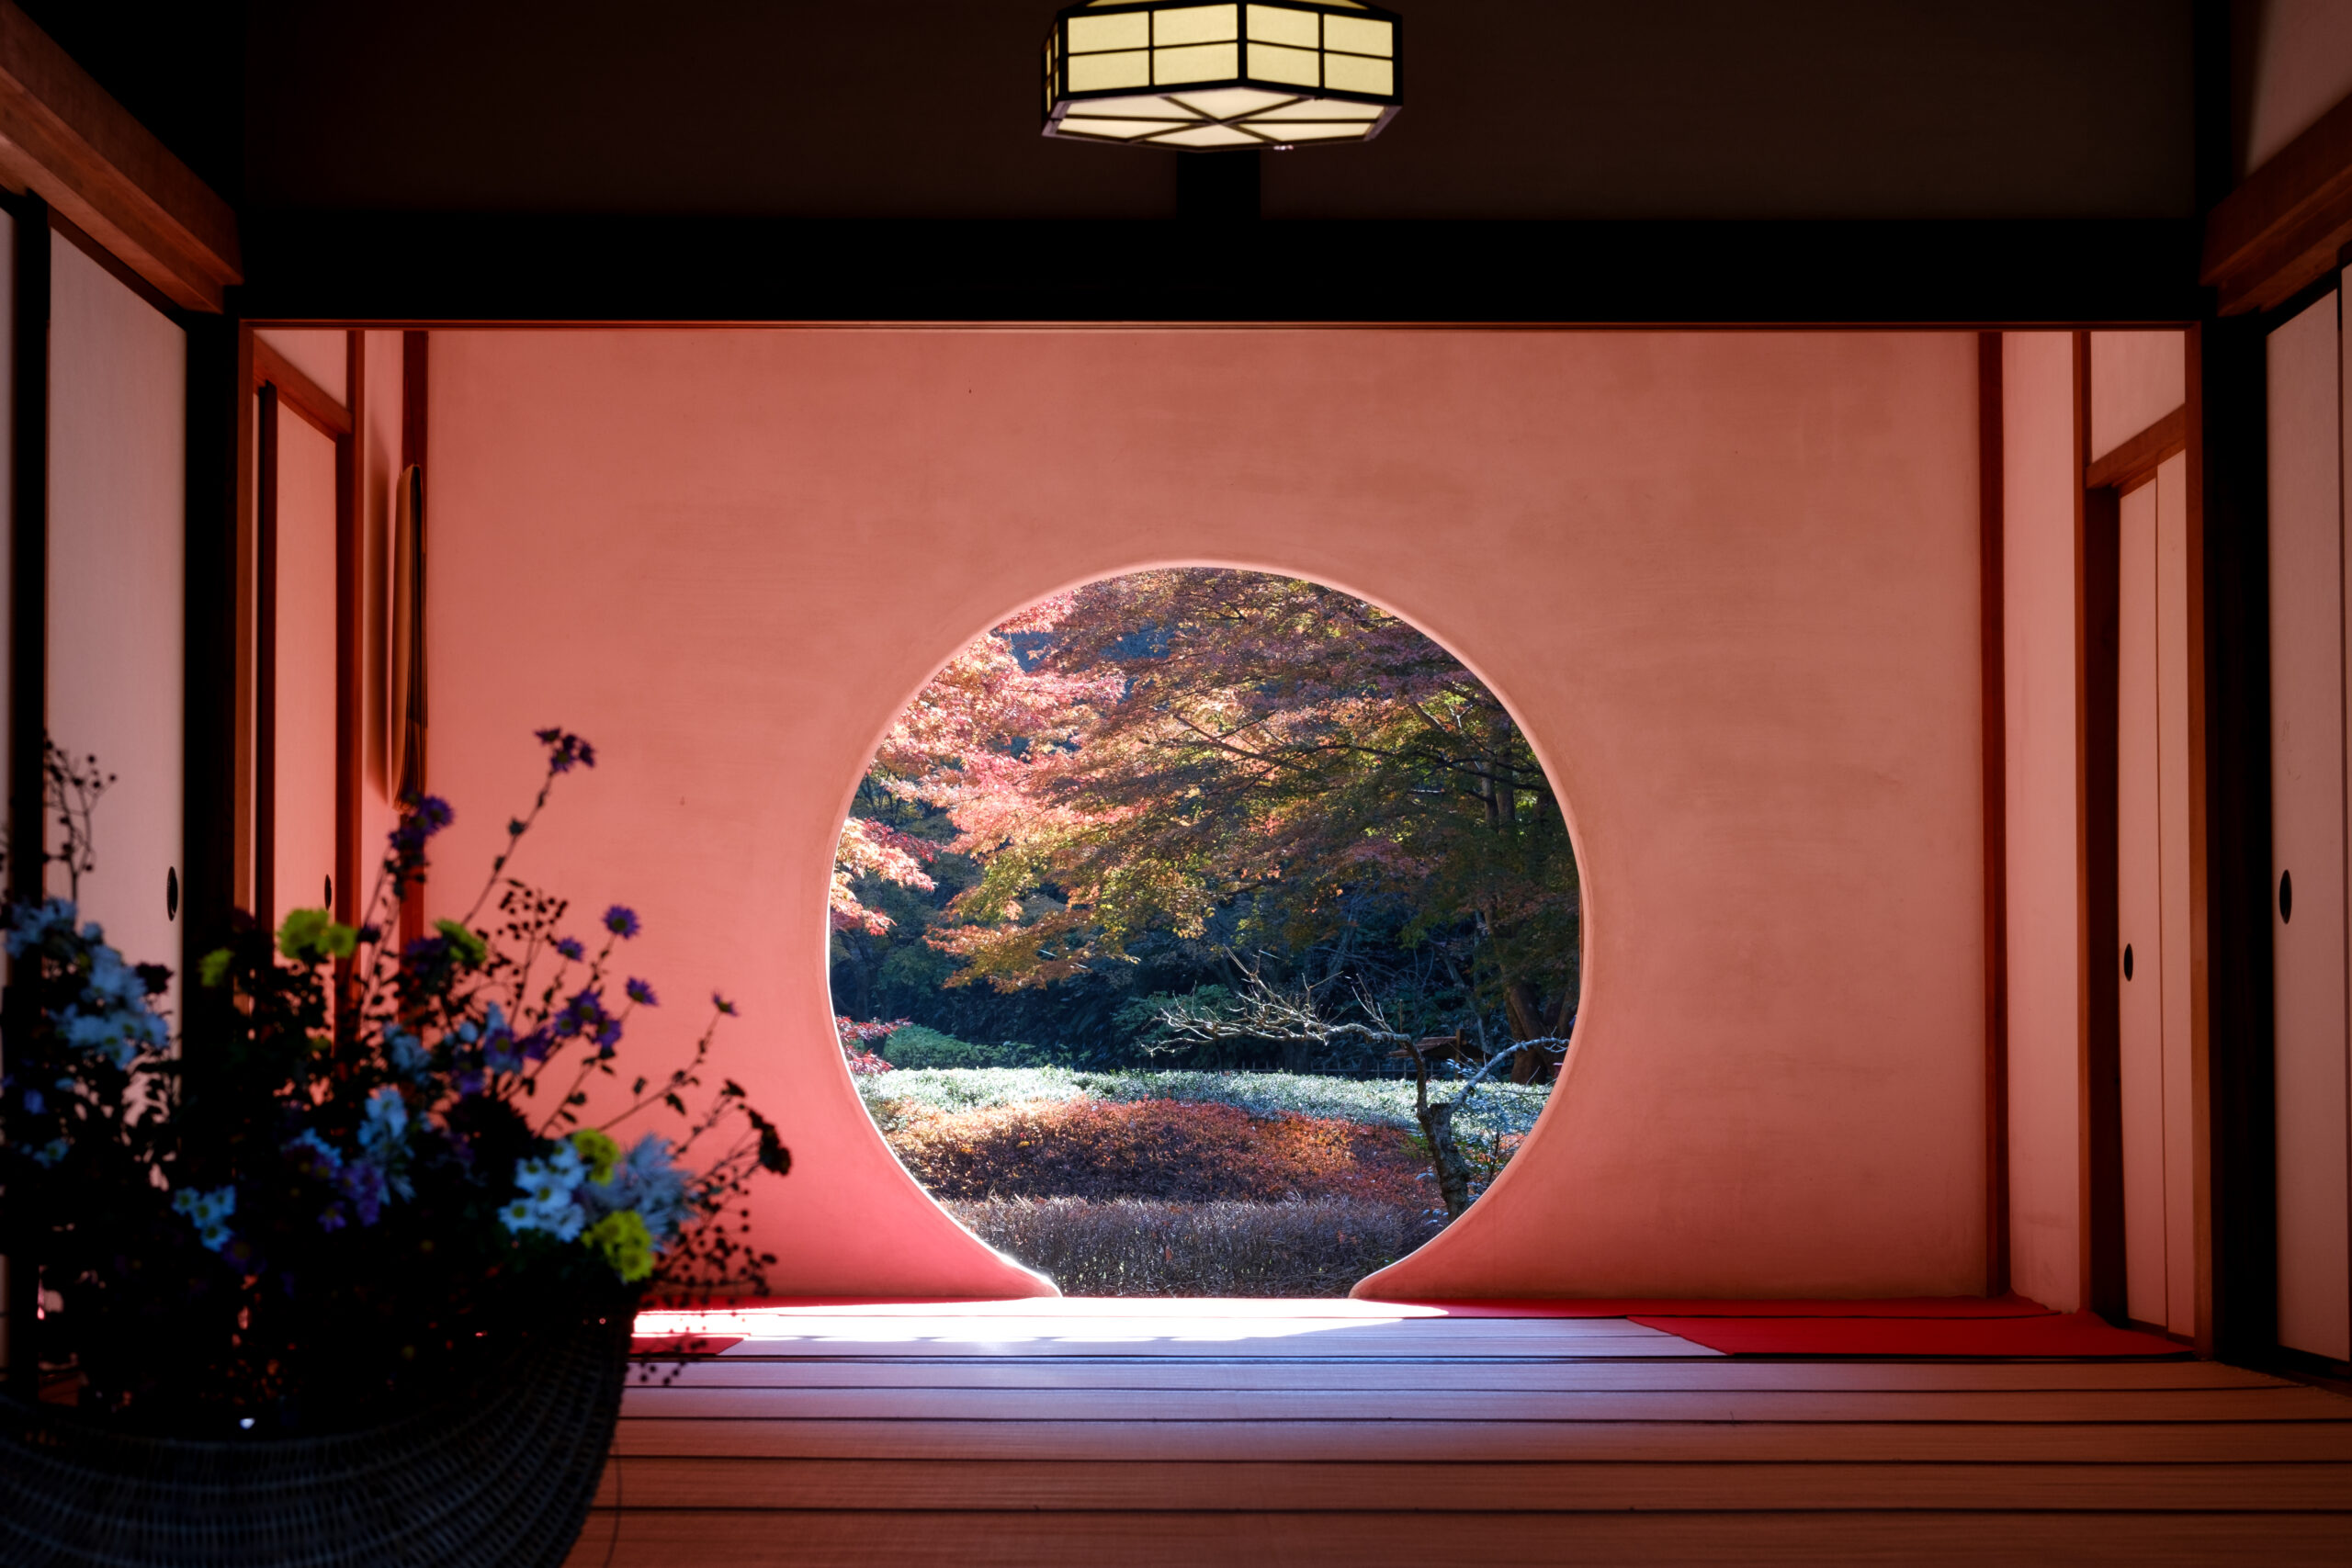 明月院 鎌倉の紅葉は12月が本番 悟りの窓から覗く紅葉を見に明月院に行ってきた ろろろぐ